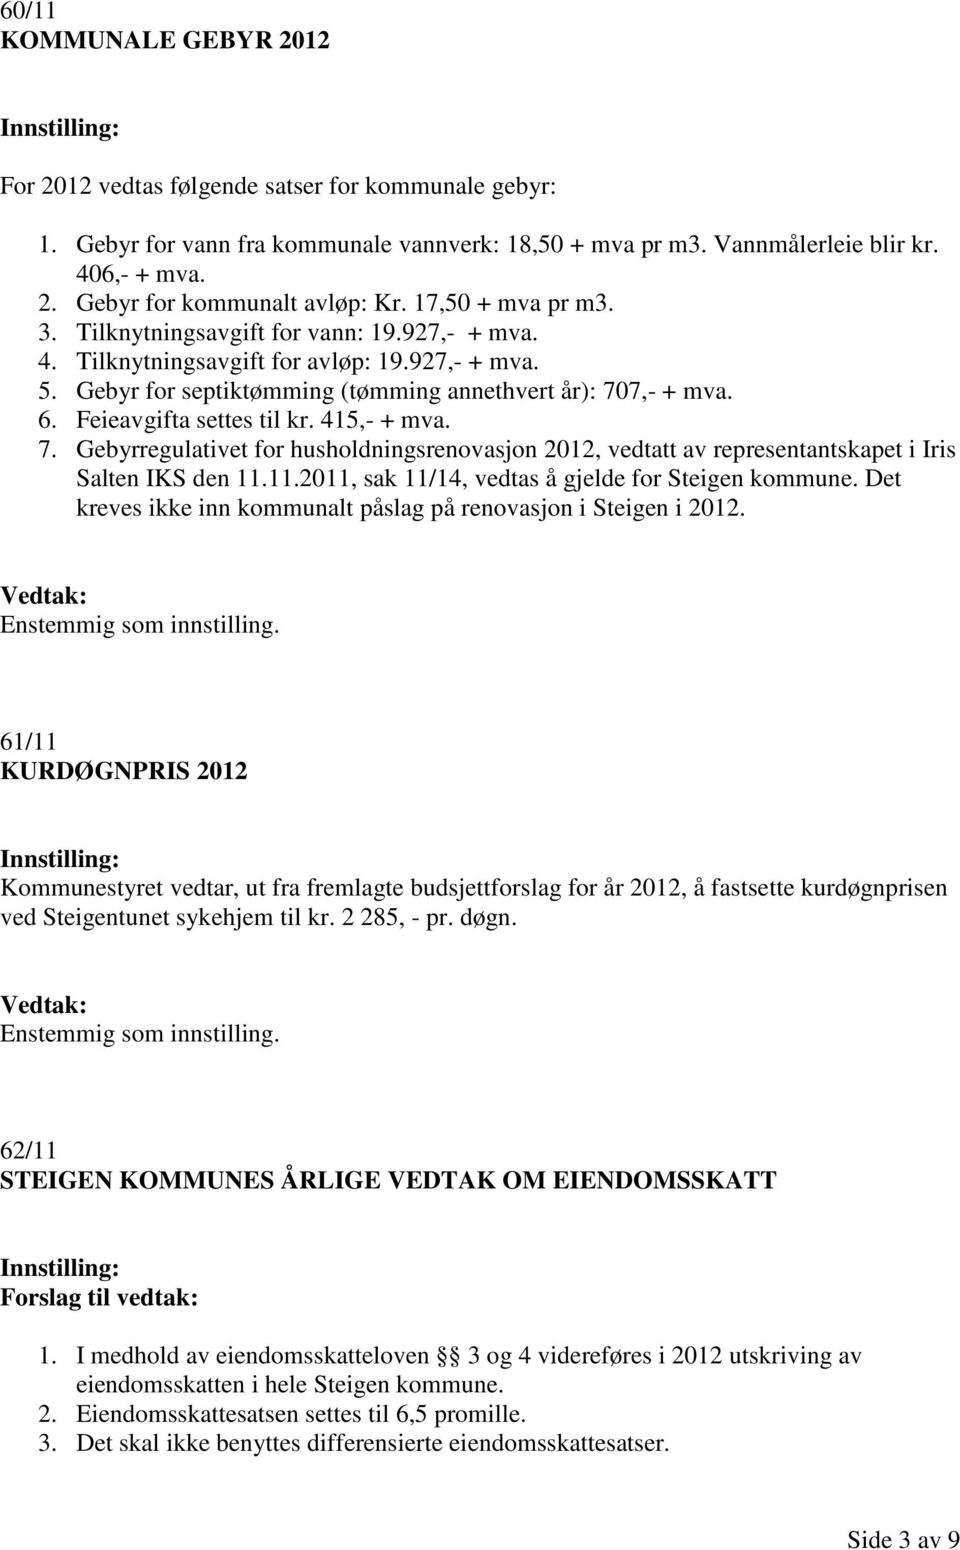 Feieavgifta settes til kr. 415,- + mva. 7. Gebyrregulativet for husholdningsrenovasjon 2012, vedtatt av representantskapet i Iris Salten IKS den 11.